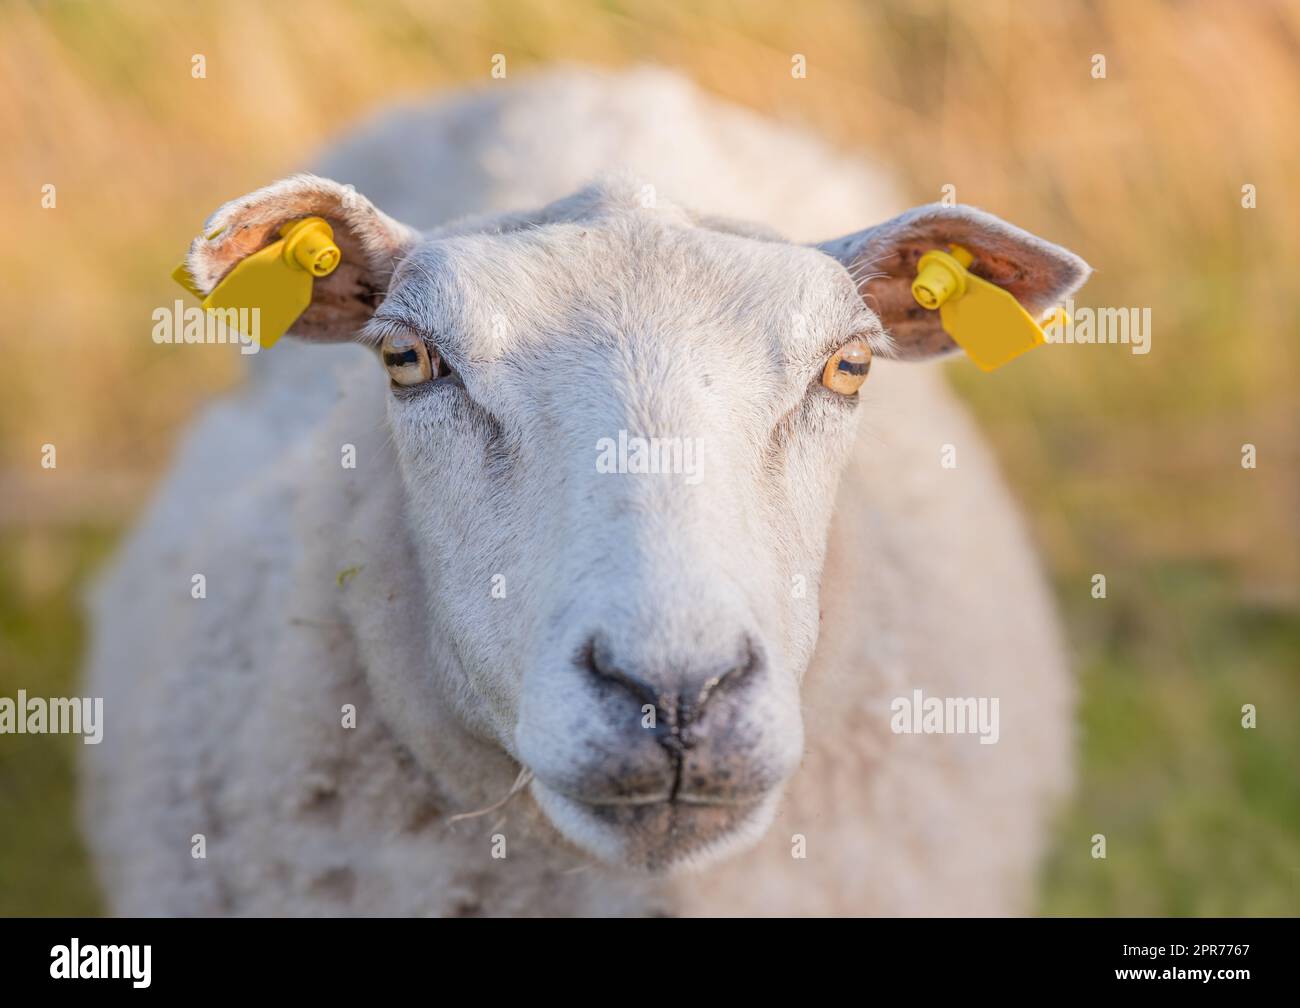 Ovejas pastando en un prado de brezo durante la puesta de sol en el Parque Nacional de Rebild, Dinamarca. Una oveja lanuda caminando y comiendo hierba en un campo floreciente o en una tierra pastoral. Granja de mutton de campo libre Foto de stock